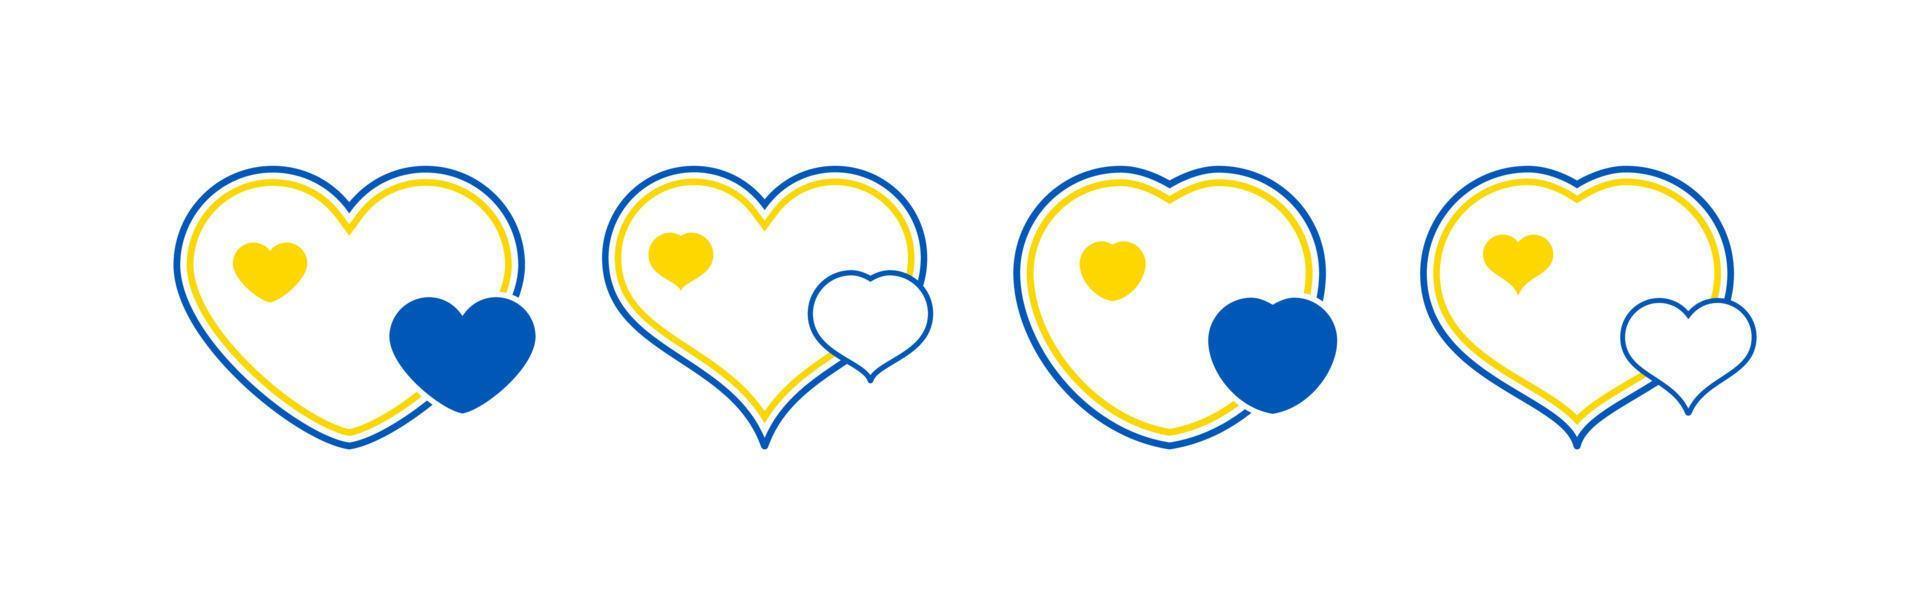 Set of hearts in Ukrainian colors vector